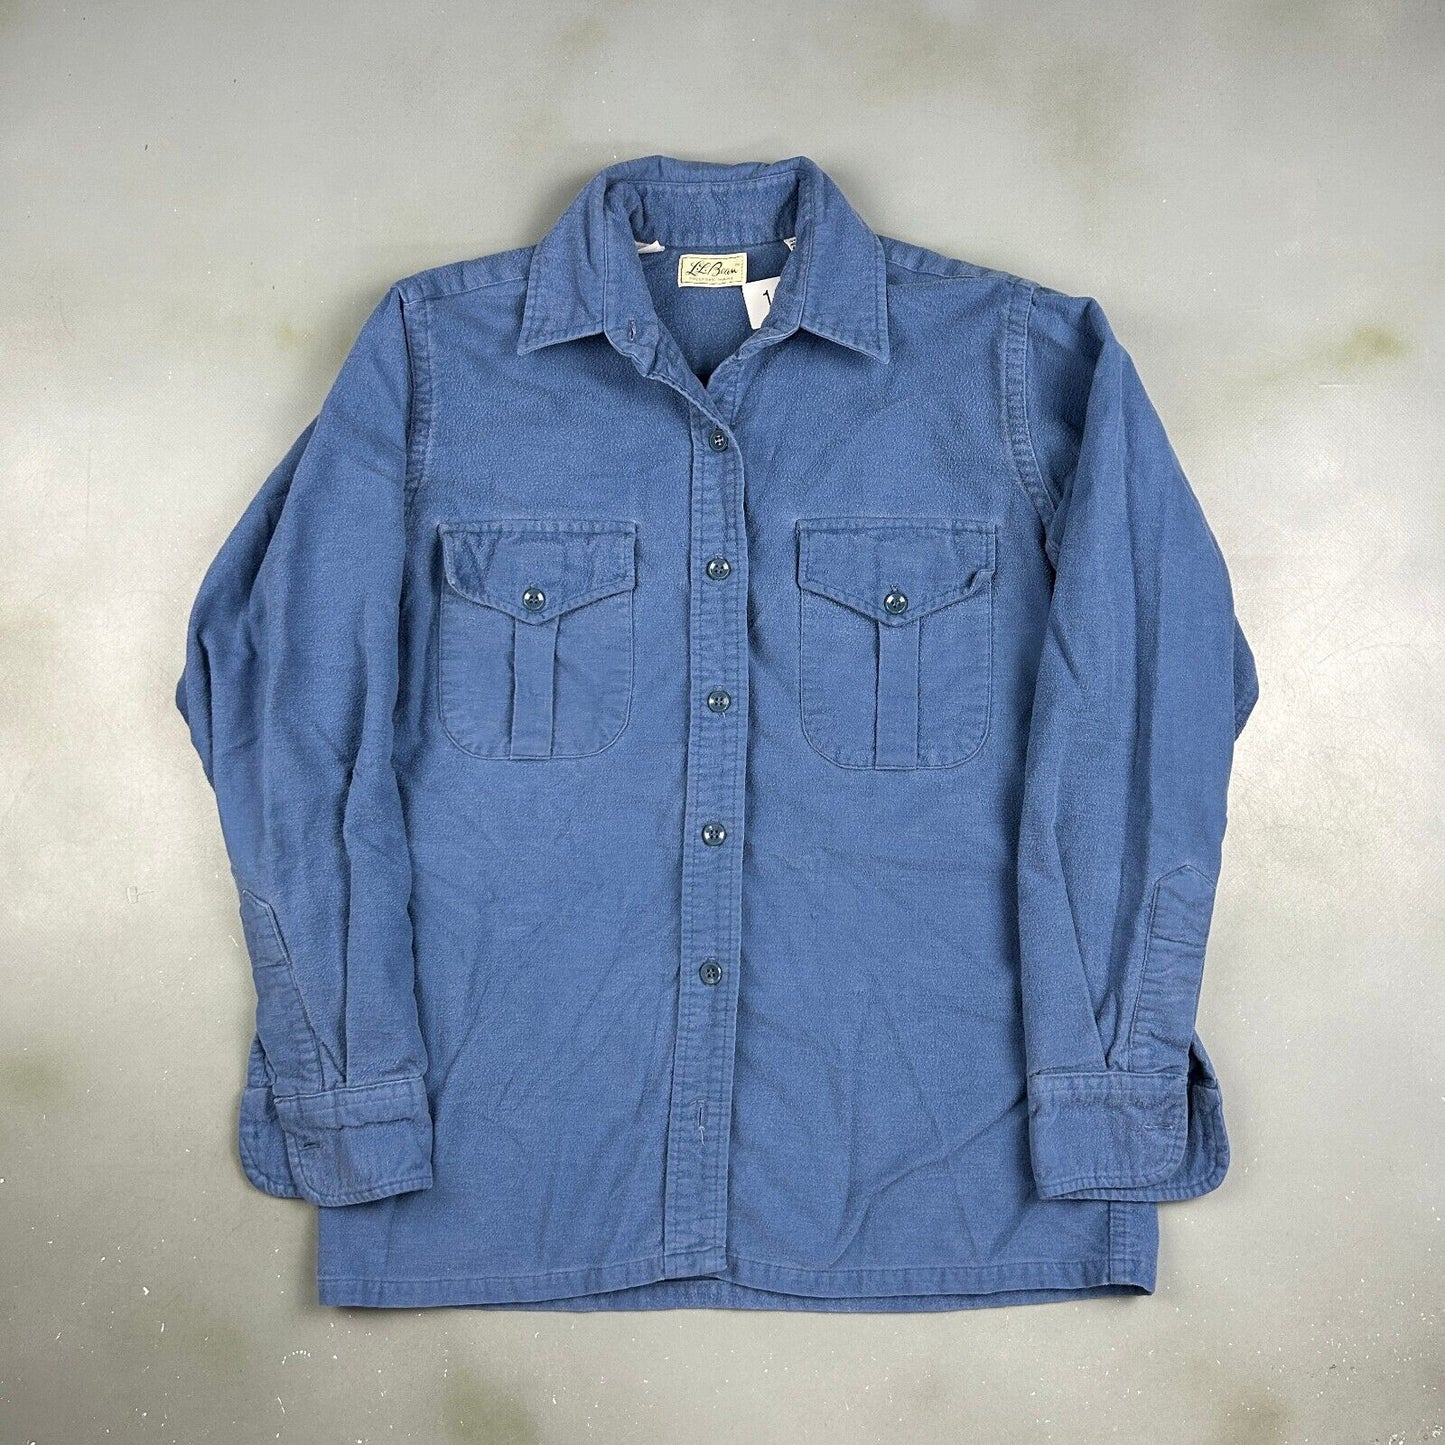 VINTAGE 90s L.L Bean Blue Chamois Cloth Button Up Shirt sz S/M Adult